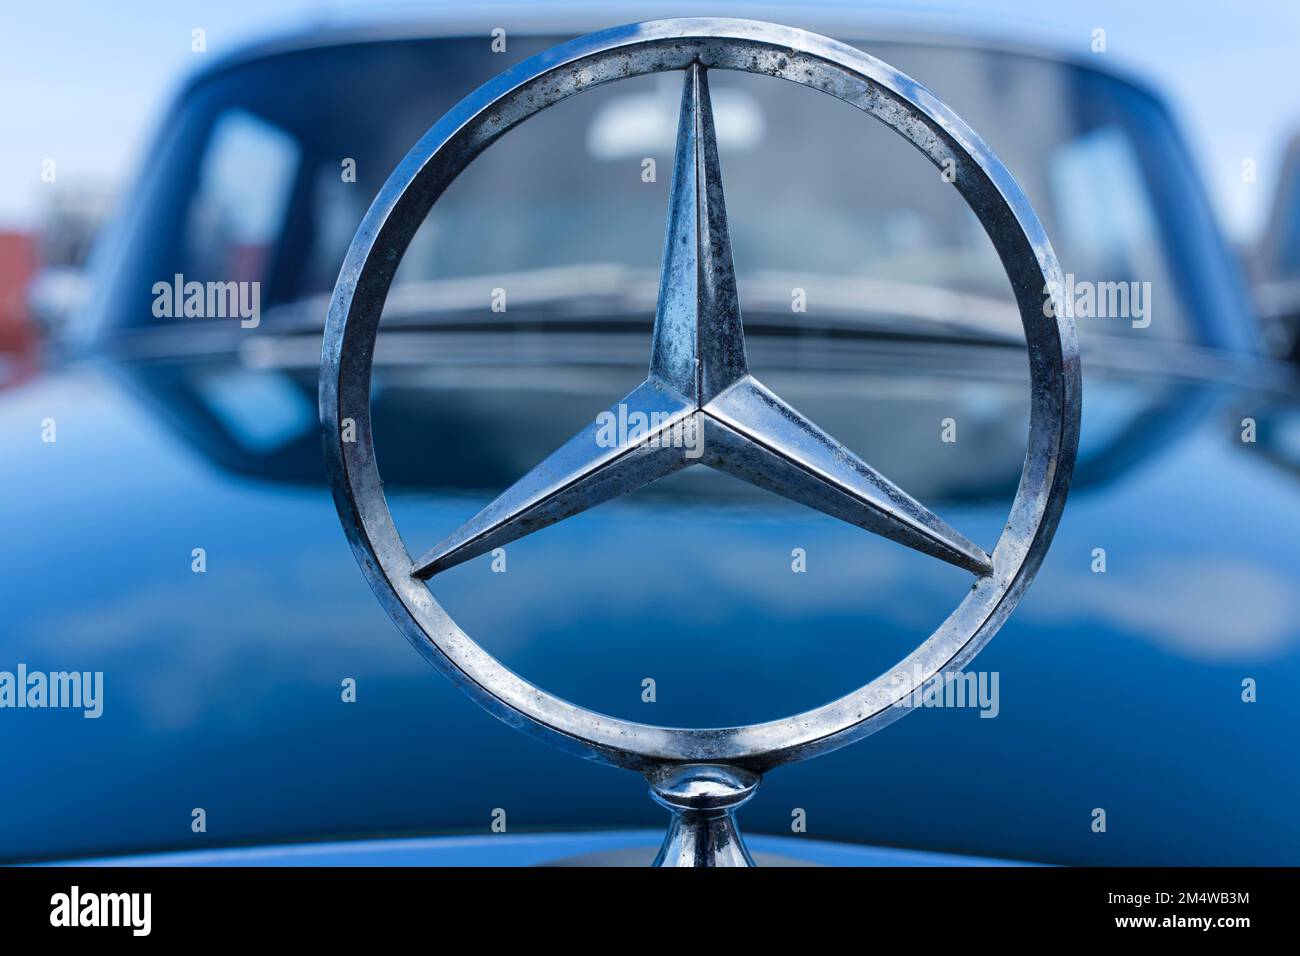 Emblème Mercedes Benz sur le capot d'une voiture bleue Banque D'Images